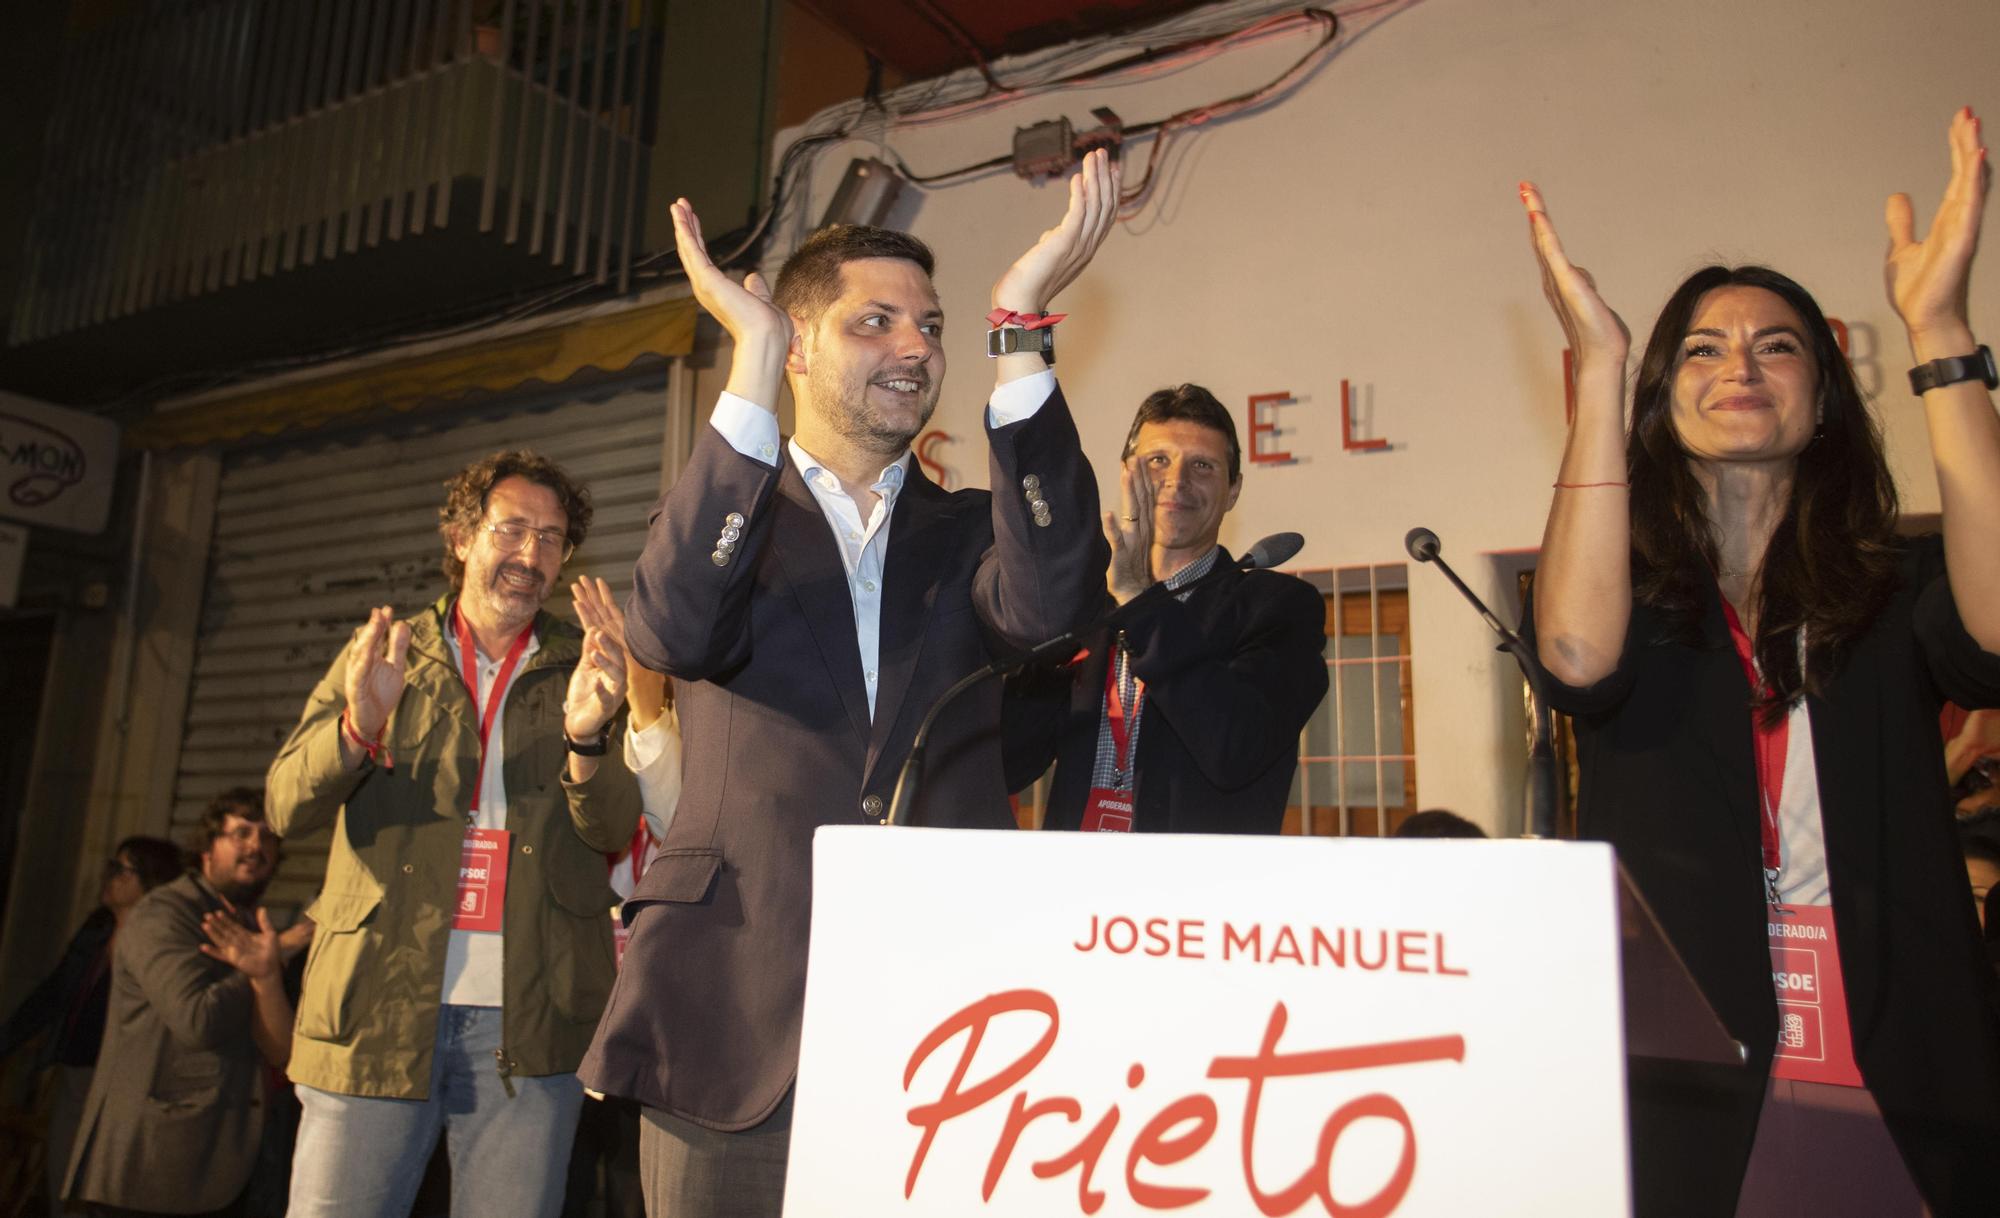 La celebración de la victoria del PSPV-PSOE de Gandia en la Casa del Poble